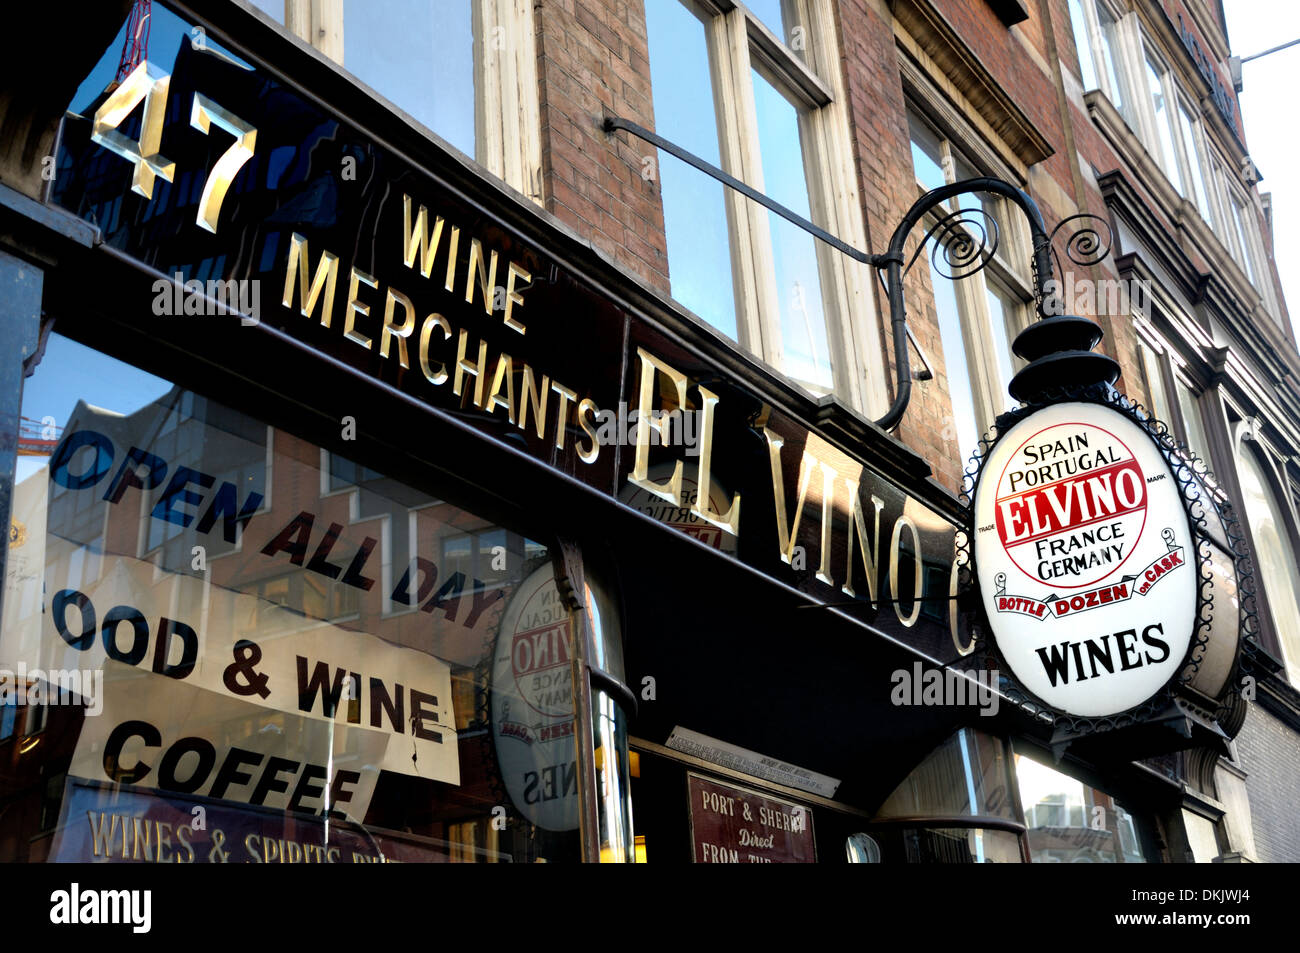 London, England, UK. El Vino wine merchants shop in Fleet Street Stock Photo